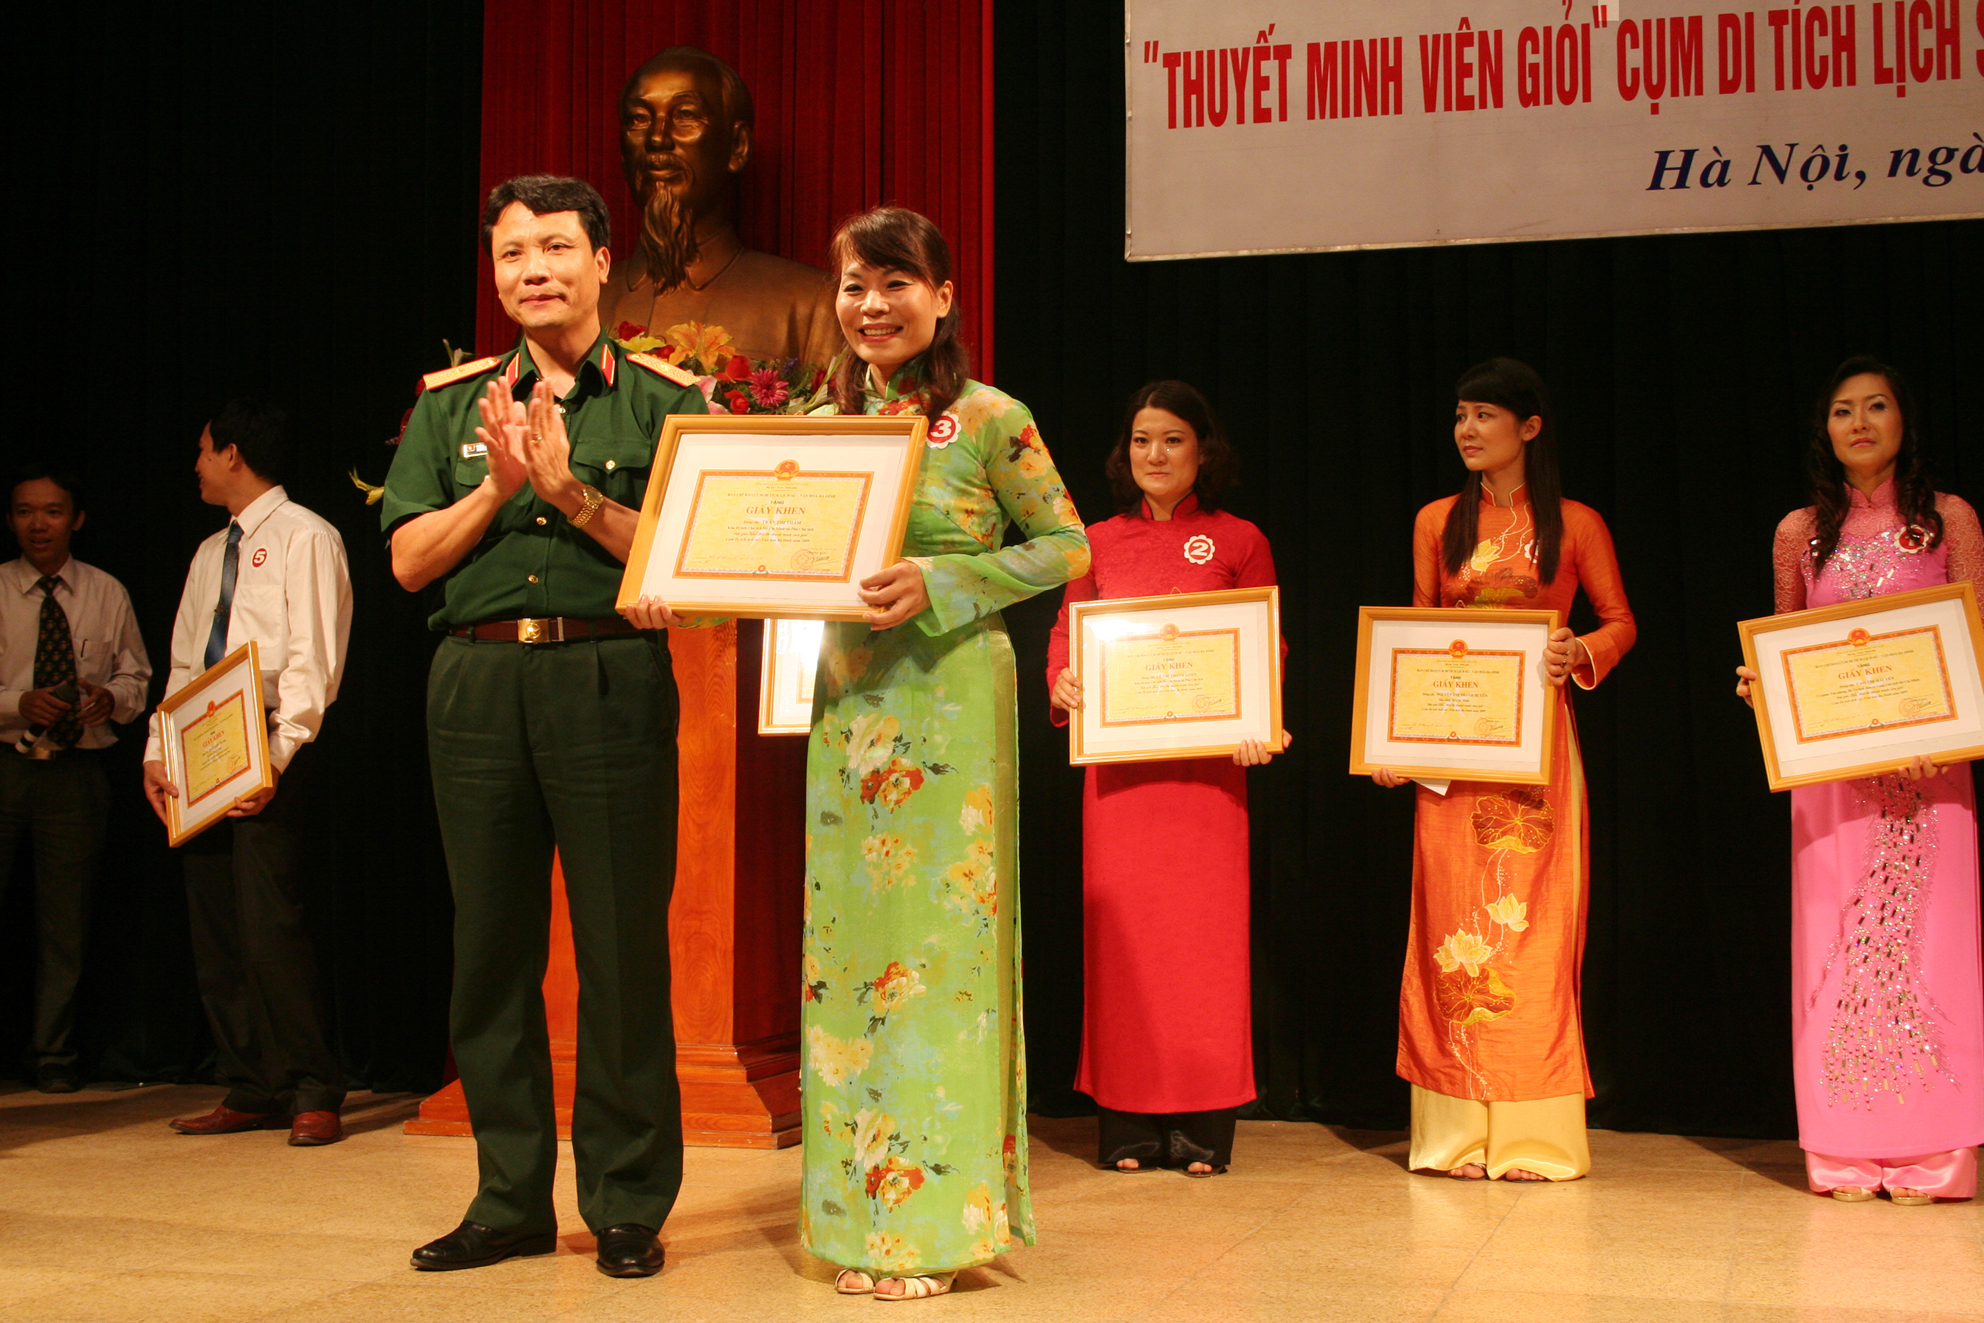 Thiếu tướng Nguyễn Văn Cương trao bằng khen cho giải nhất - thuyết minh viên Trần Thị Thắm (Khu Di tích Phủ Chủ tịch)